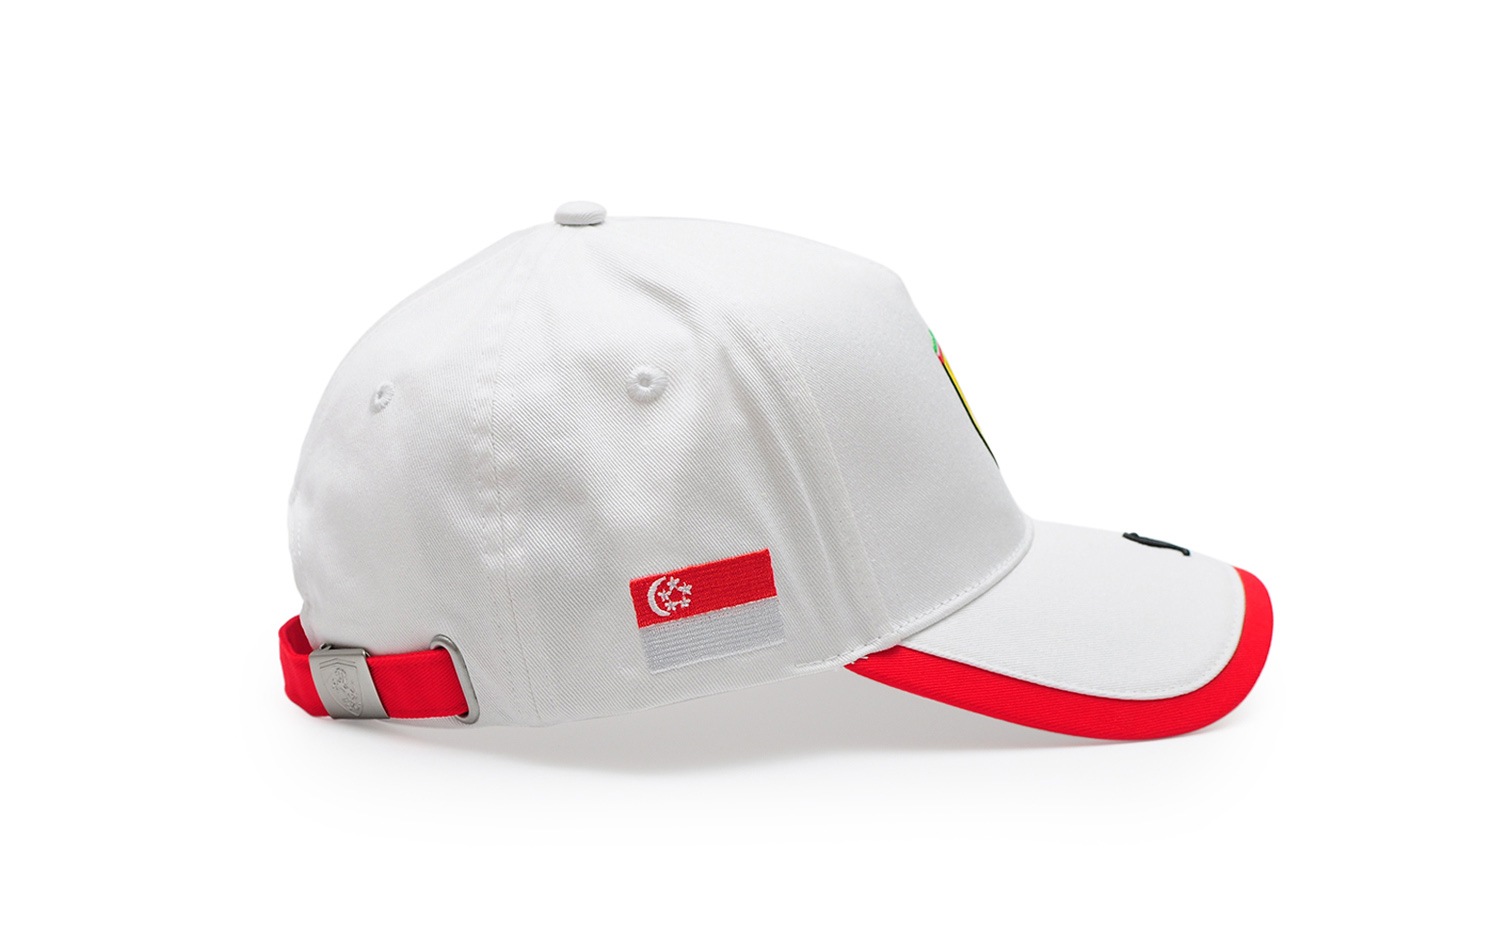 法拉利專賣店 (Ferrari Store) 新加坡城市系列白色鴨舌帽